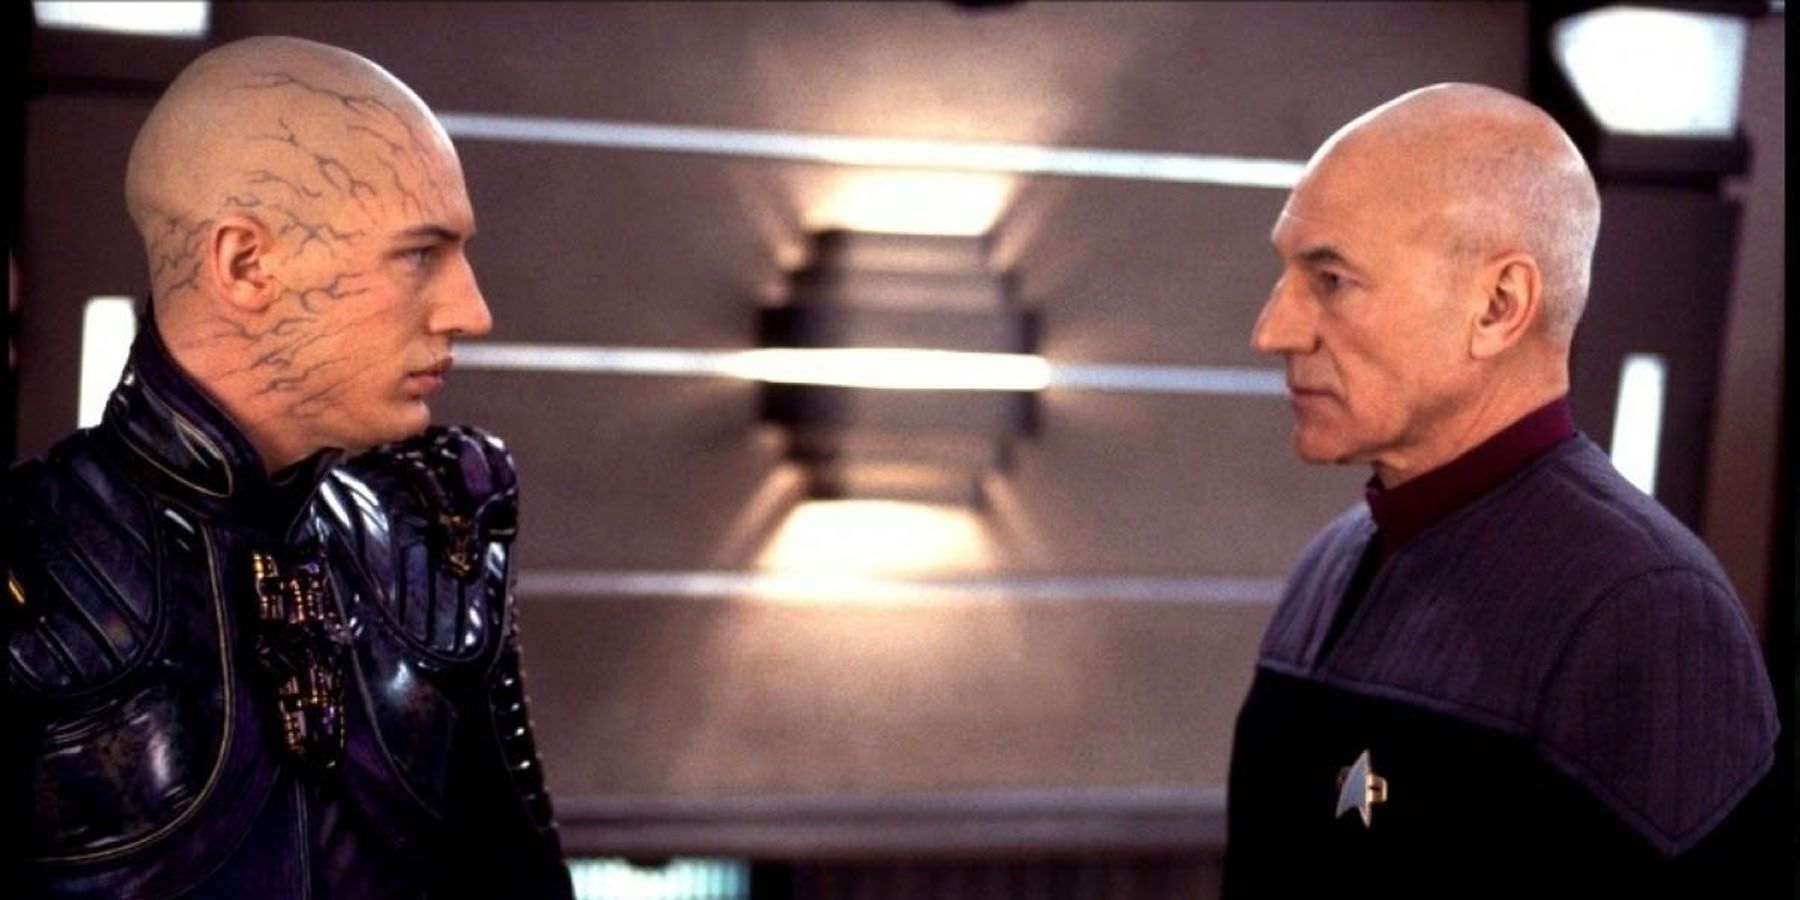 Picard and Shinzon